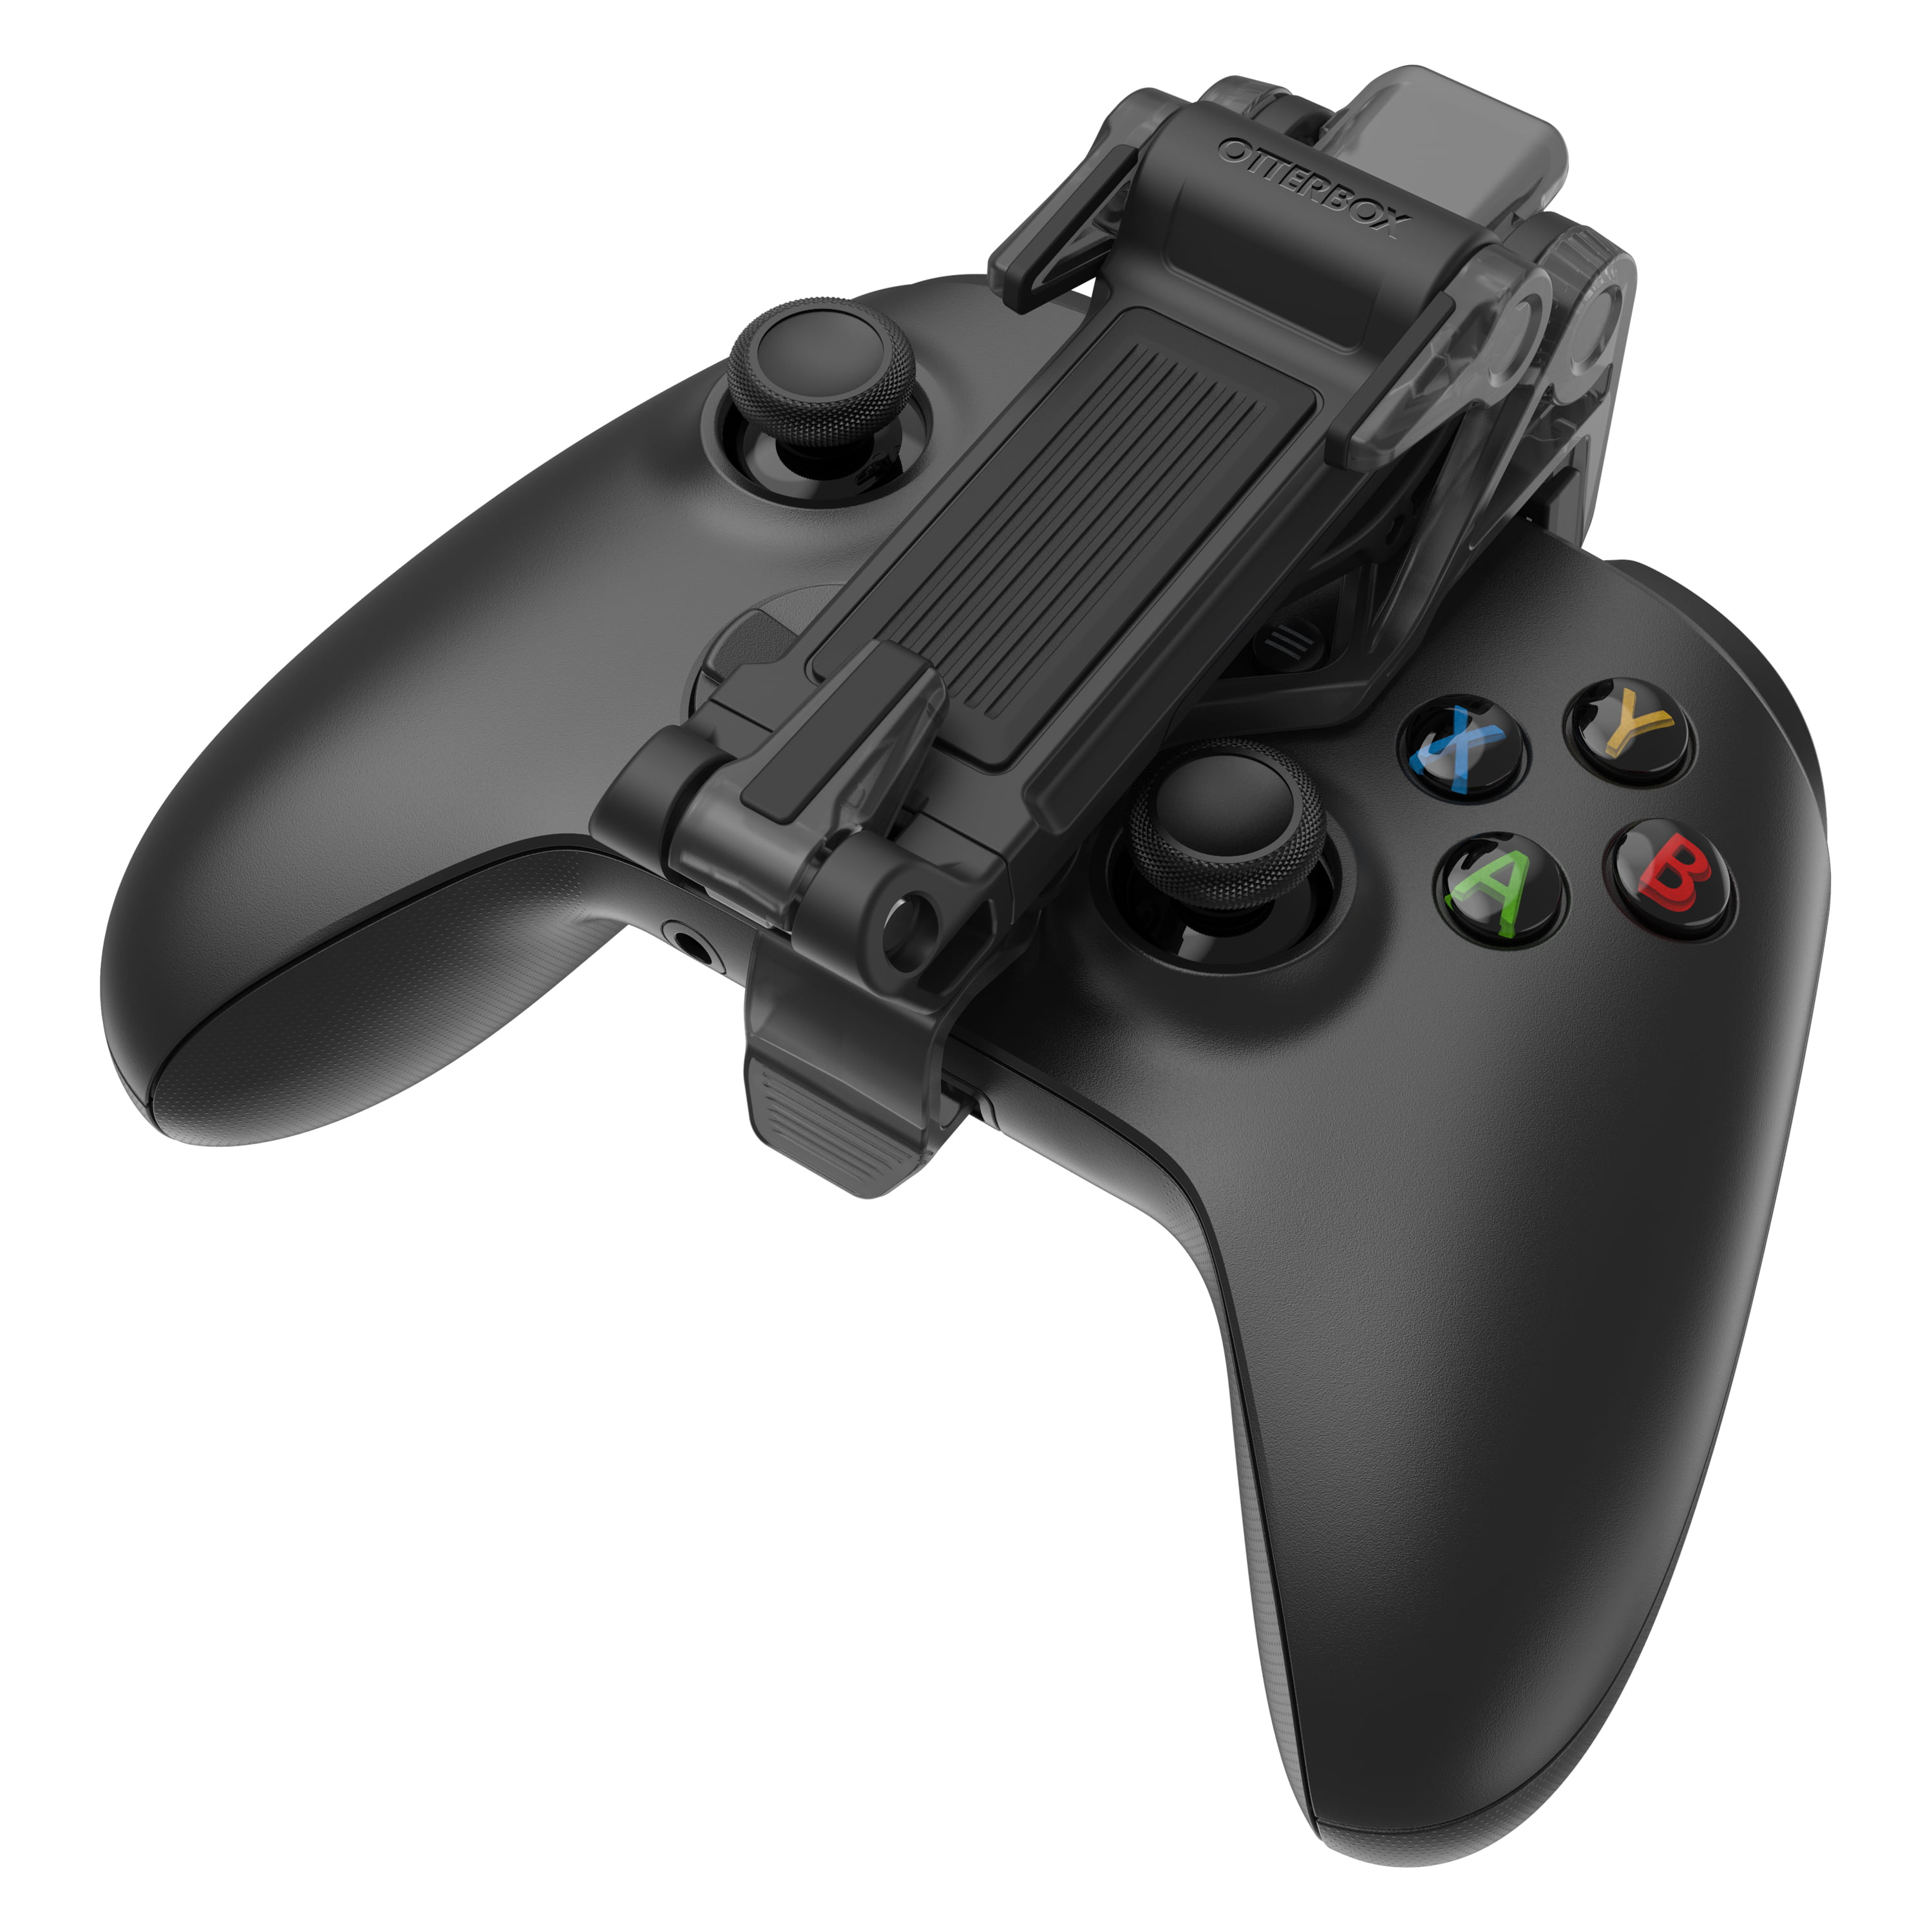 Grab A Modular Xbox Controller For Only $35 - GameSpot